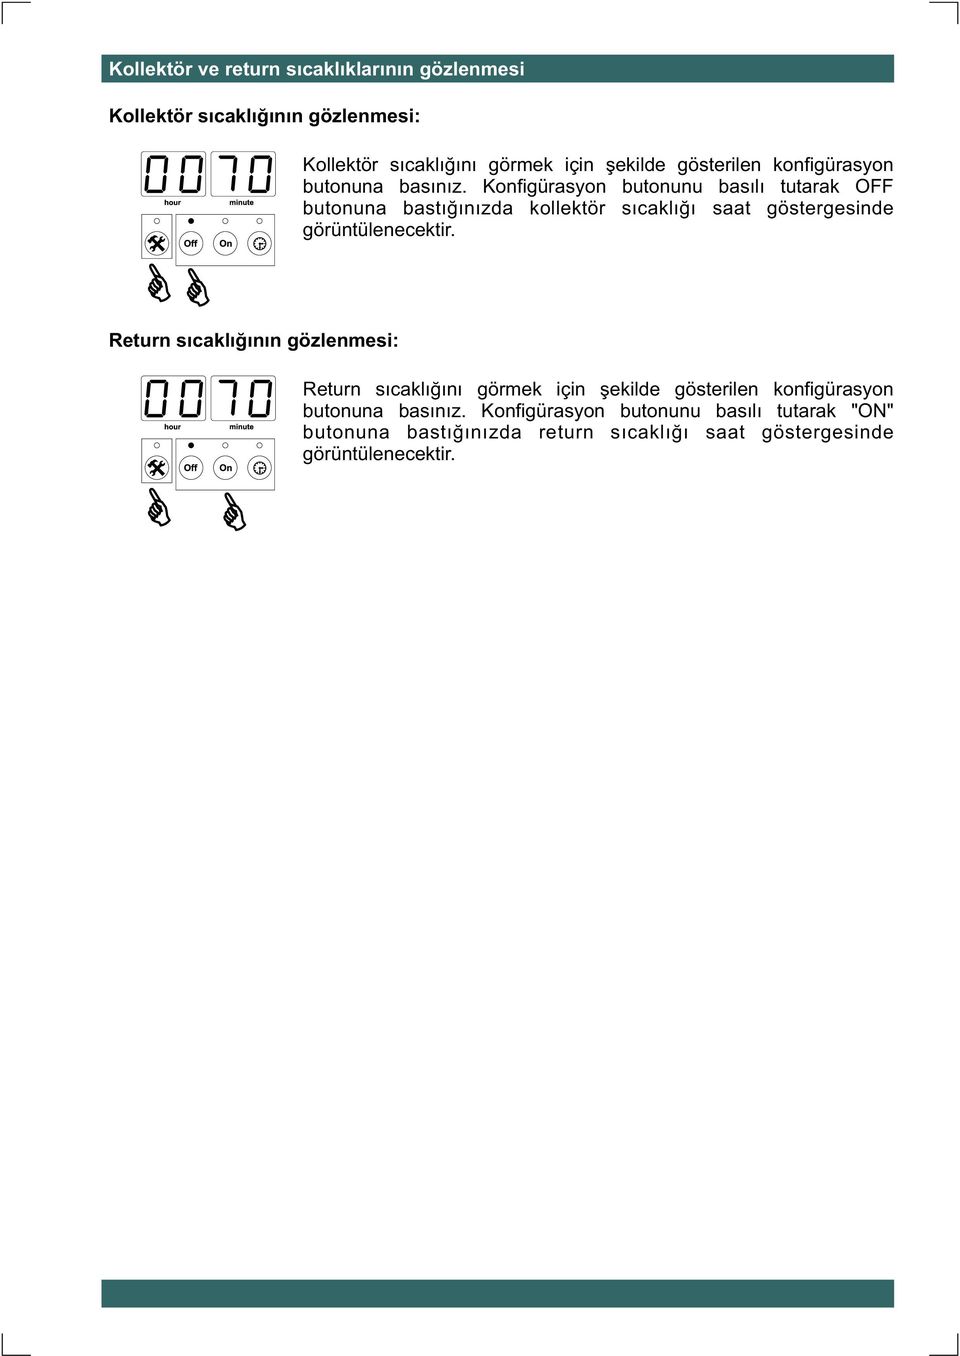 Konfigürasyon butonunu basýlý tutarak OFF butonuna bastýðýnýzda kollektör sýcaklýðý saat göstergesinde görüntülenecektir.